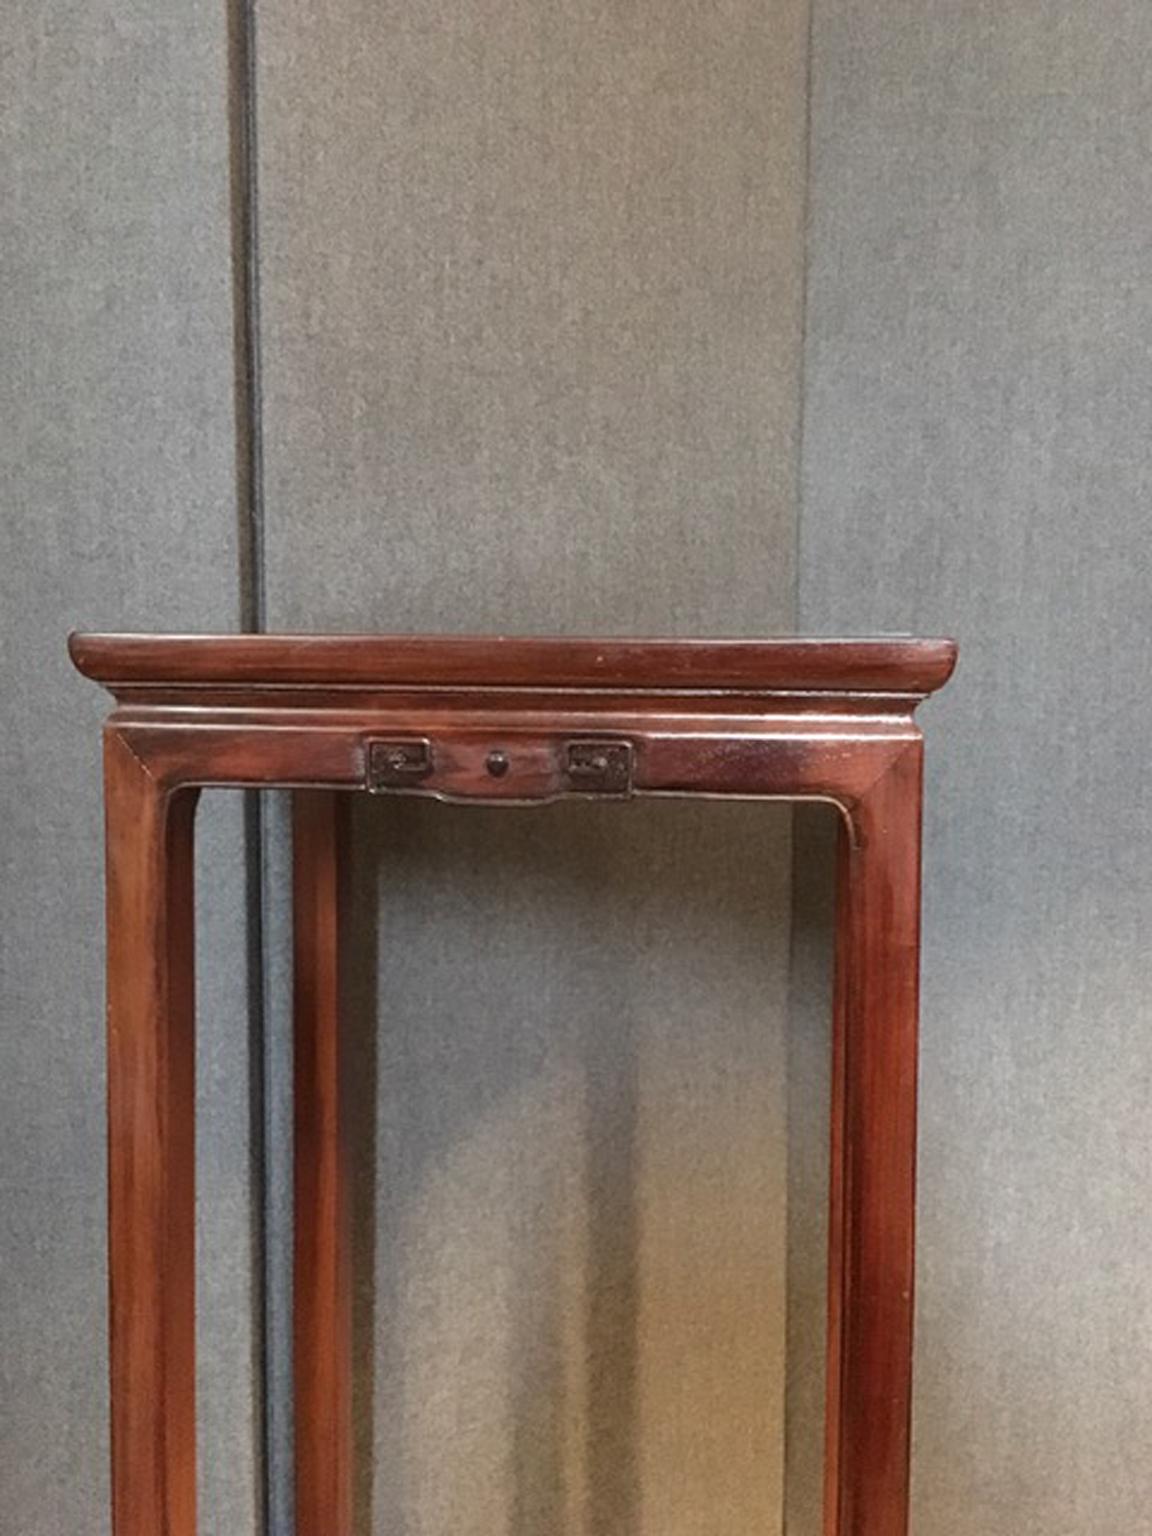 China Ulmenholzsockel handgeschnitzt mit feinen handgeschnitzten Details an allen Seiten. Die Holzfarbe ist ähnlich wie Mahagoni.